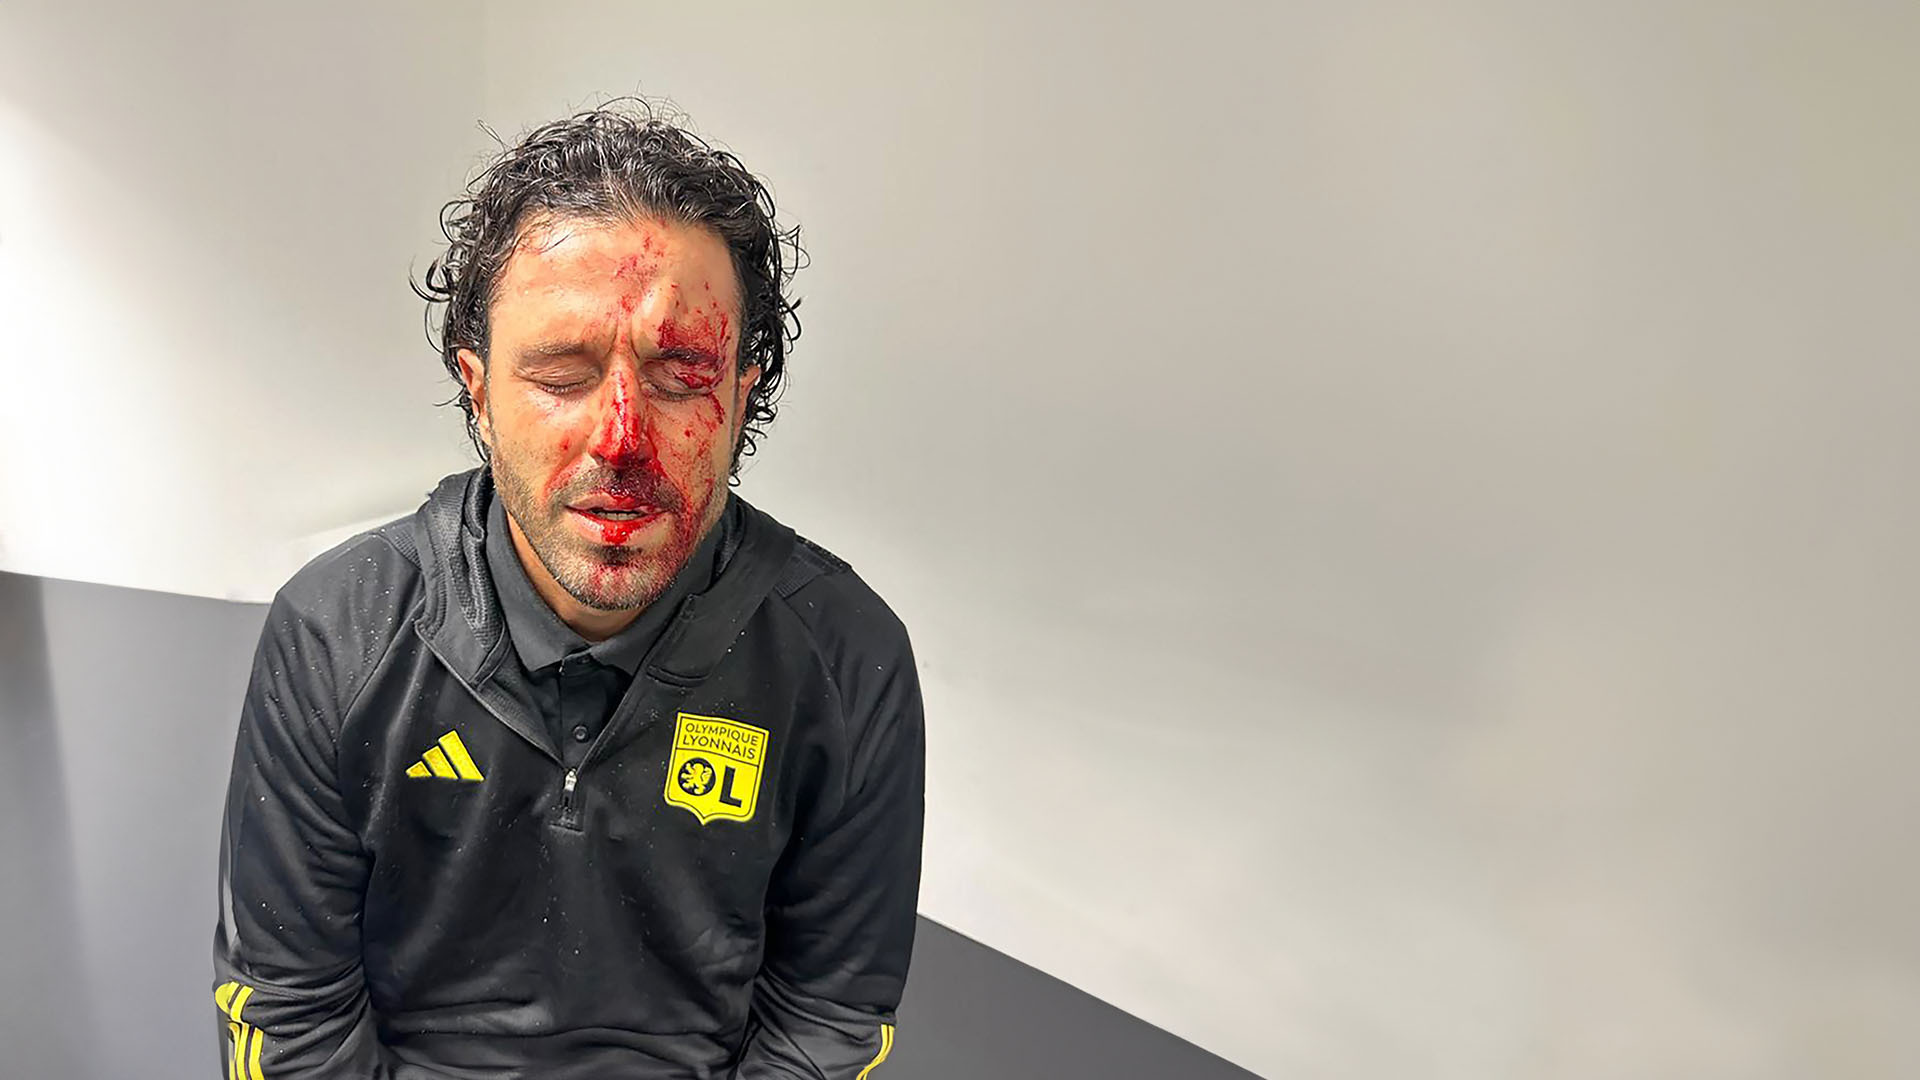 El 29 de octubre, un apedreamiento al autobús del Lyon por parte de radicales del Marsella ocasionó una grave herida a Fabio Grosso, entrenador del Lyon. El autocar quedó completamente destrozado y el OM-Lyon se suspendió, disputándose, con público, en el Vélodrome, el día 6 de diciembre.